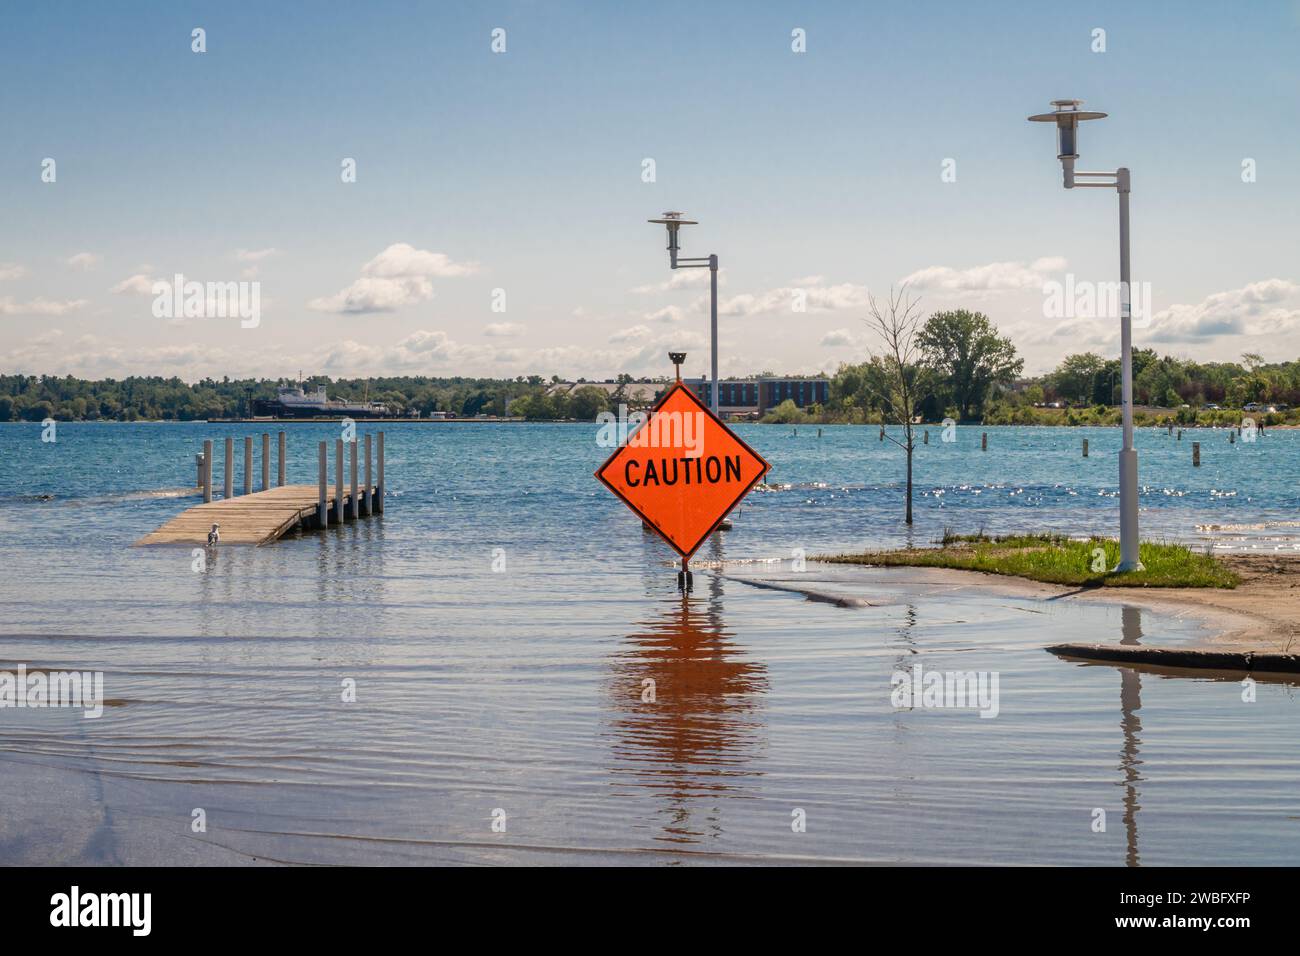 L'élévation du niveau de la mer provoque des inondations en ville. Banque D'Images